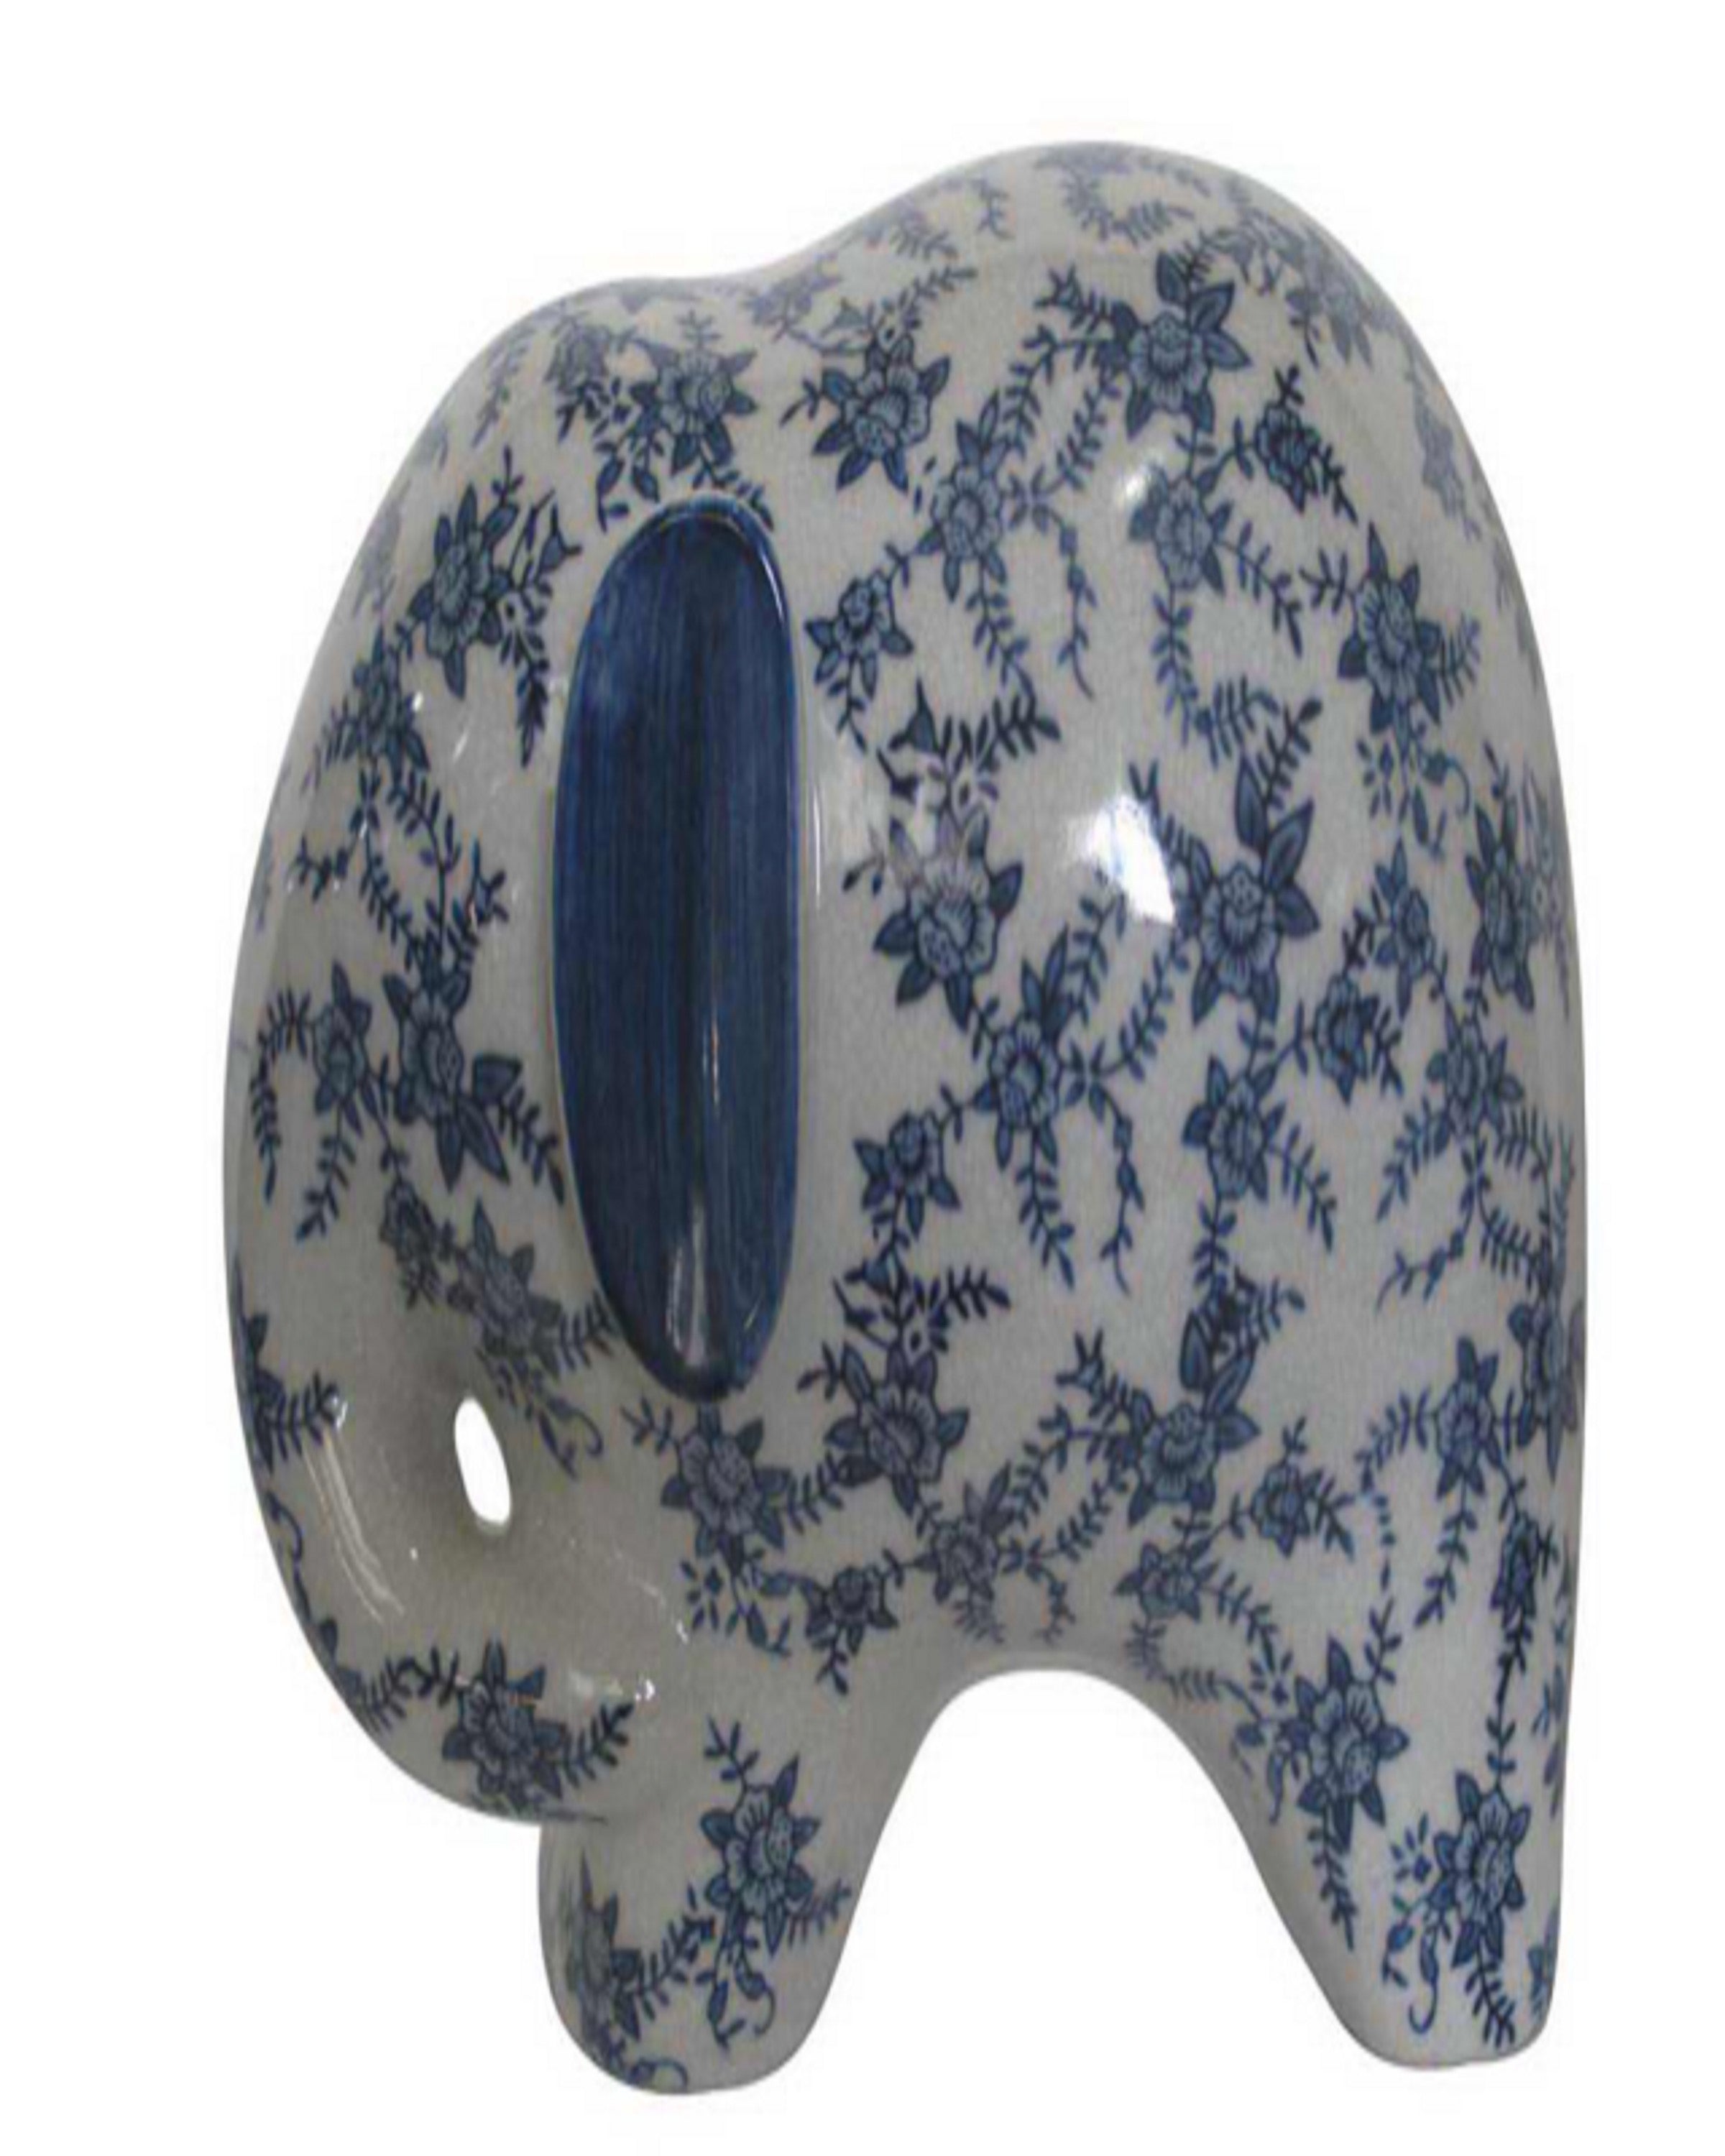 Designer Ceramic Elephant Vases